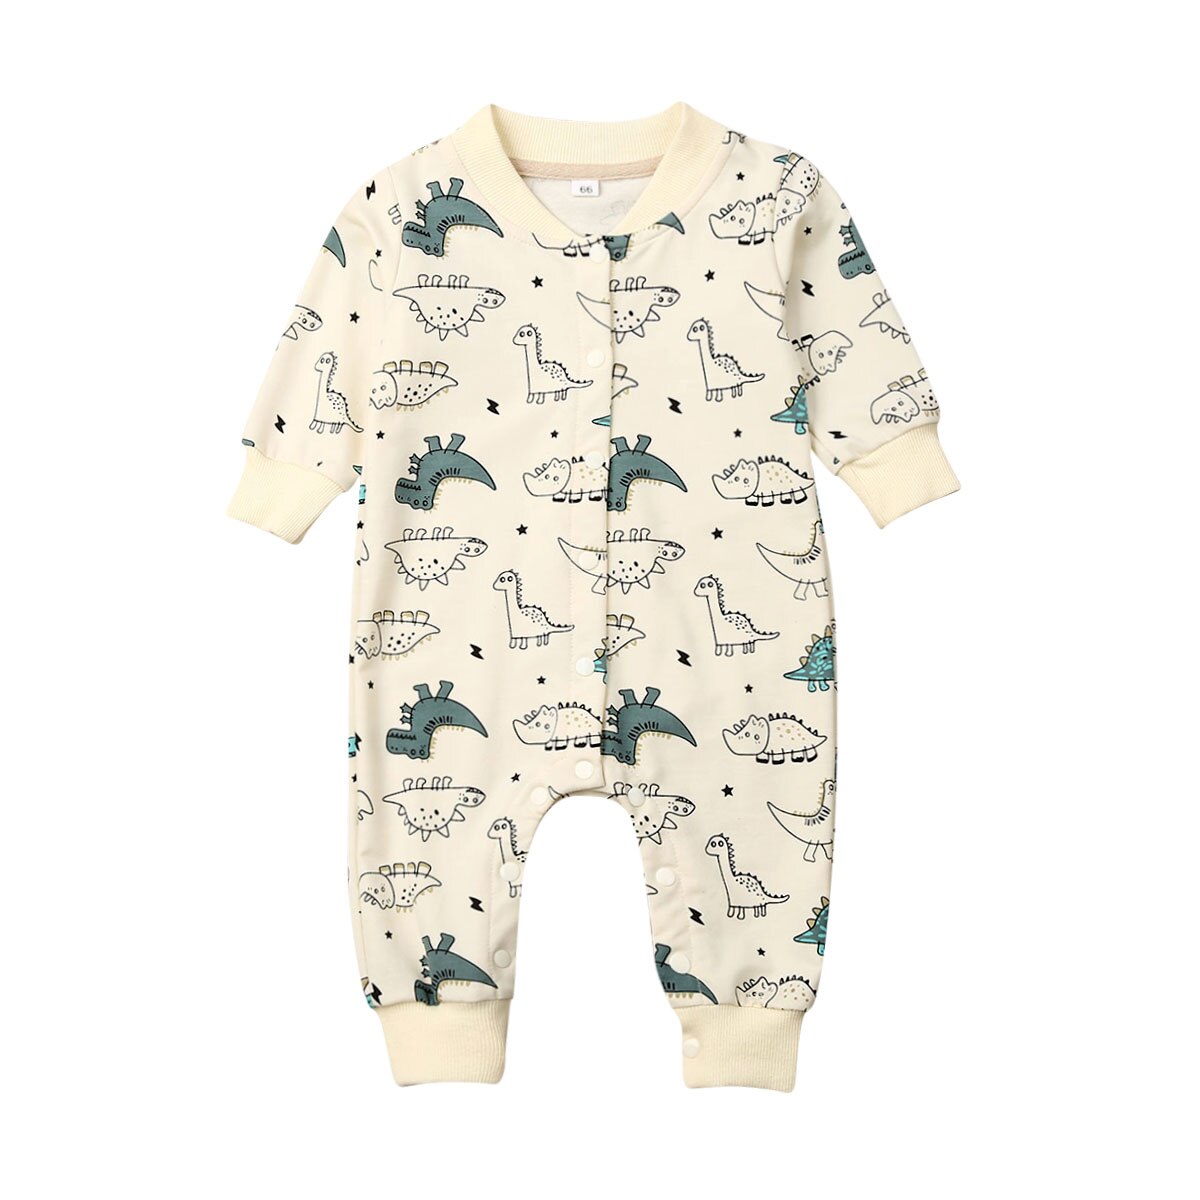 Toddler baby dreng pige varm bolde tøj langærmet dinosaur print enkelt breasted romper jumpsuit outfit: Beige / 18m